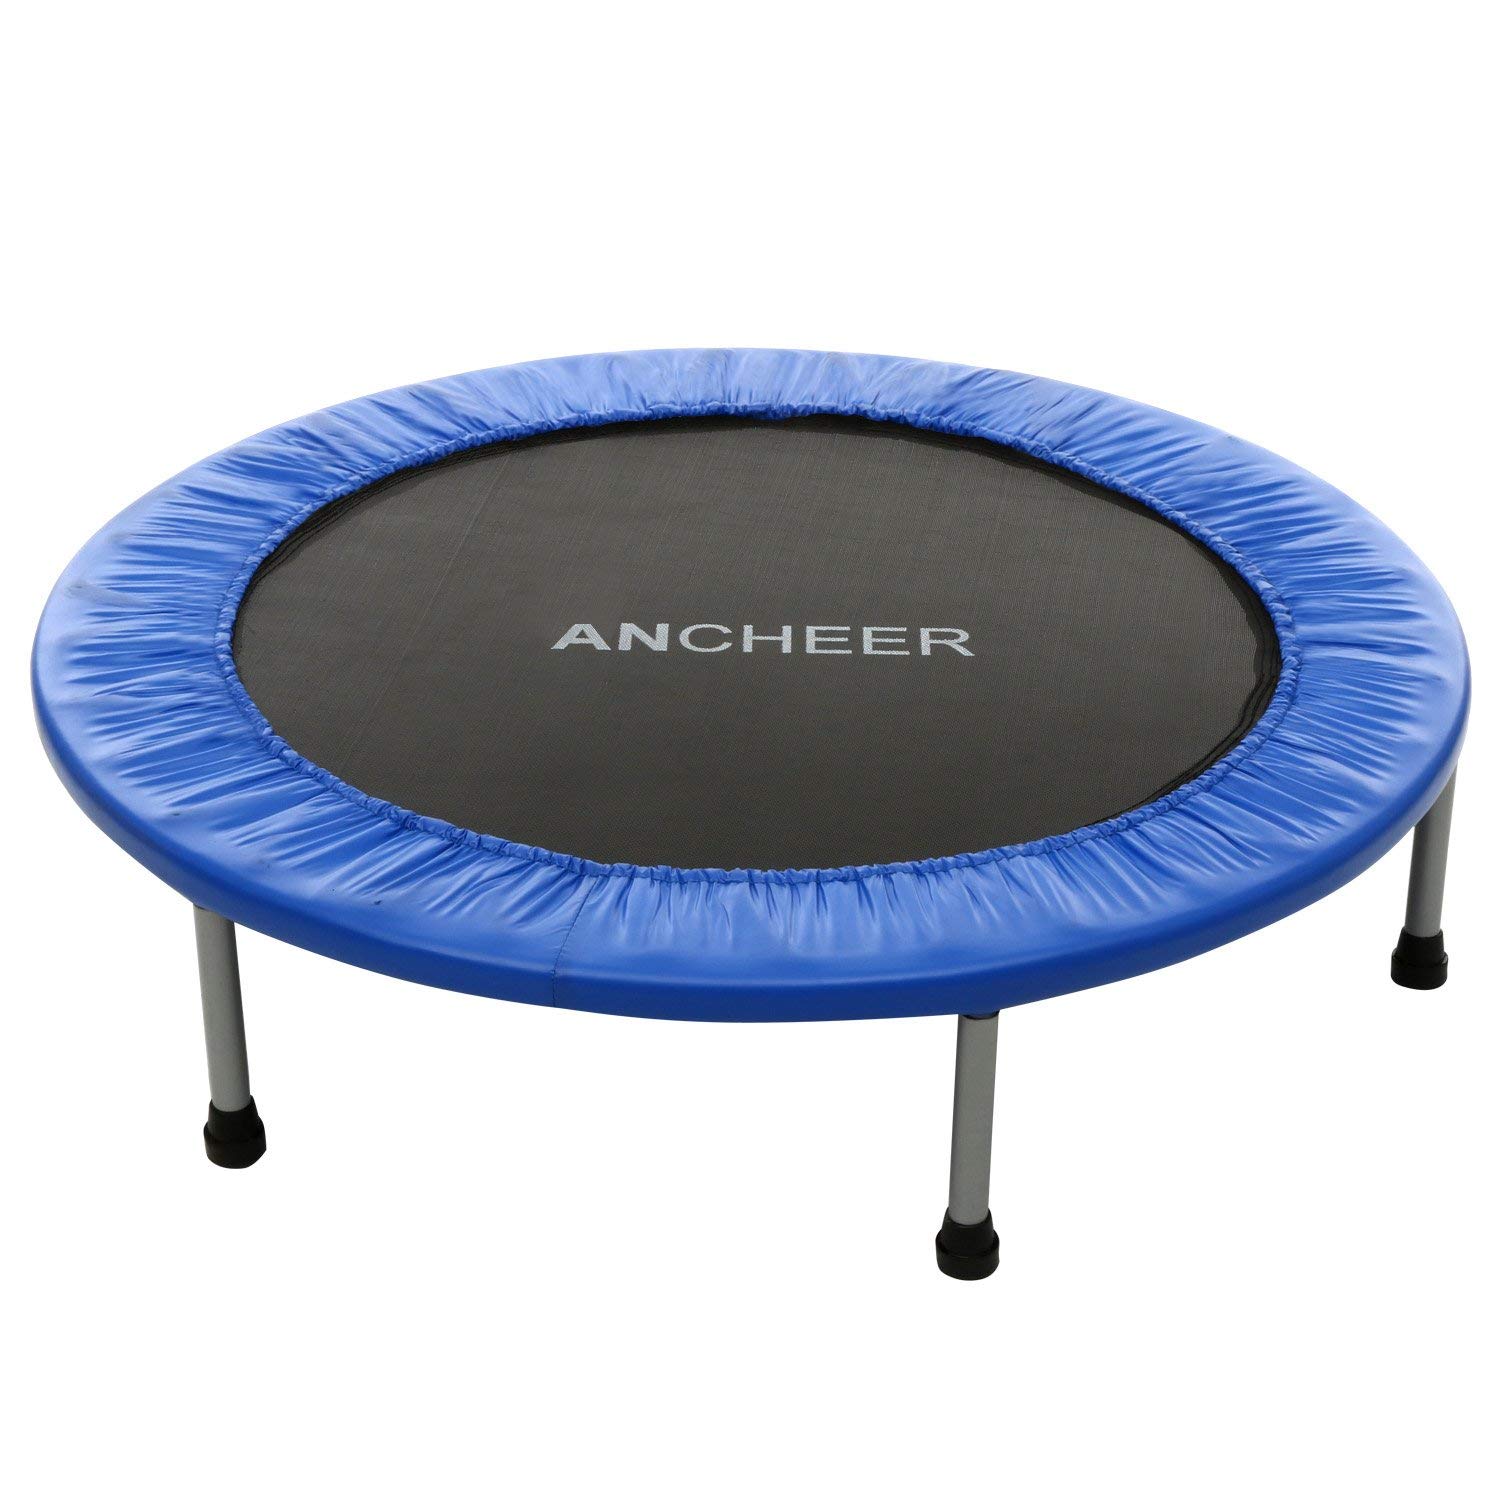 ANCHEER Rebounder Trampoline